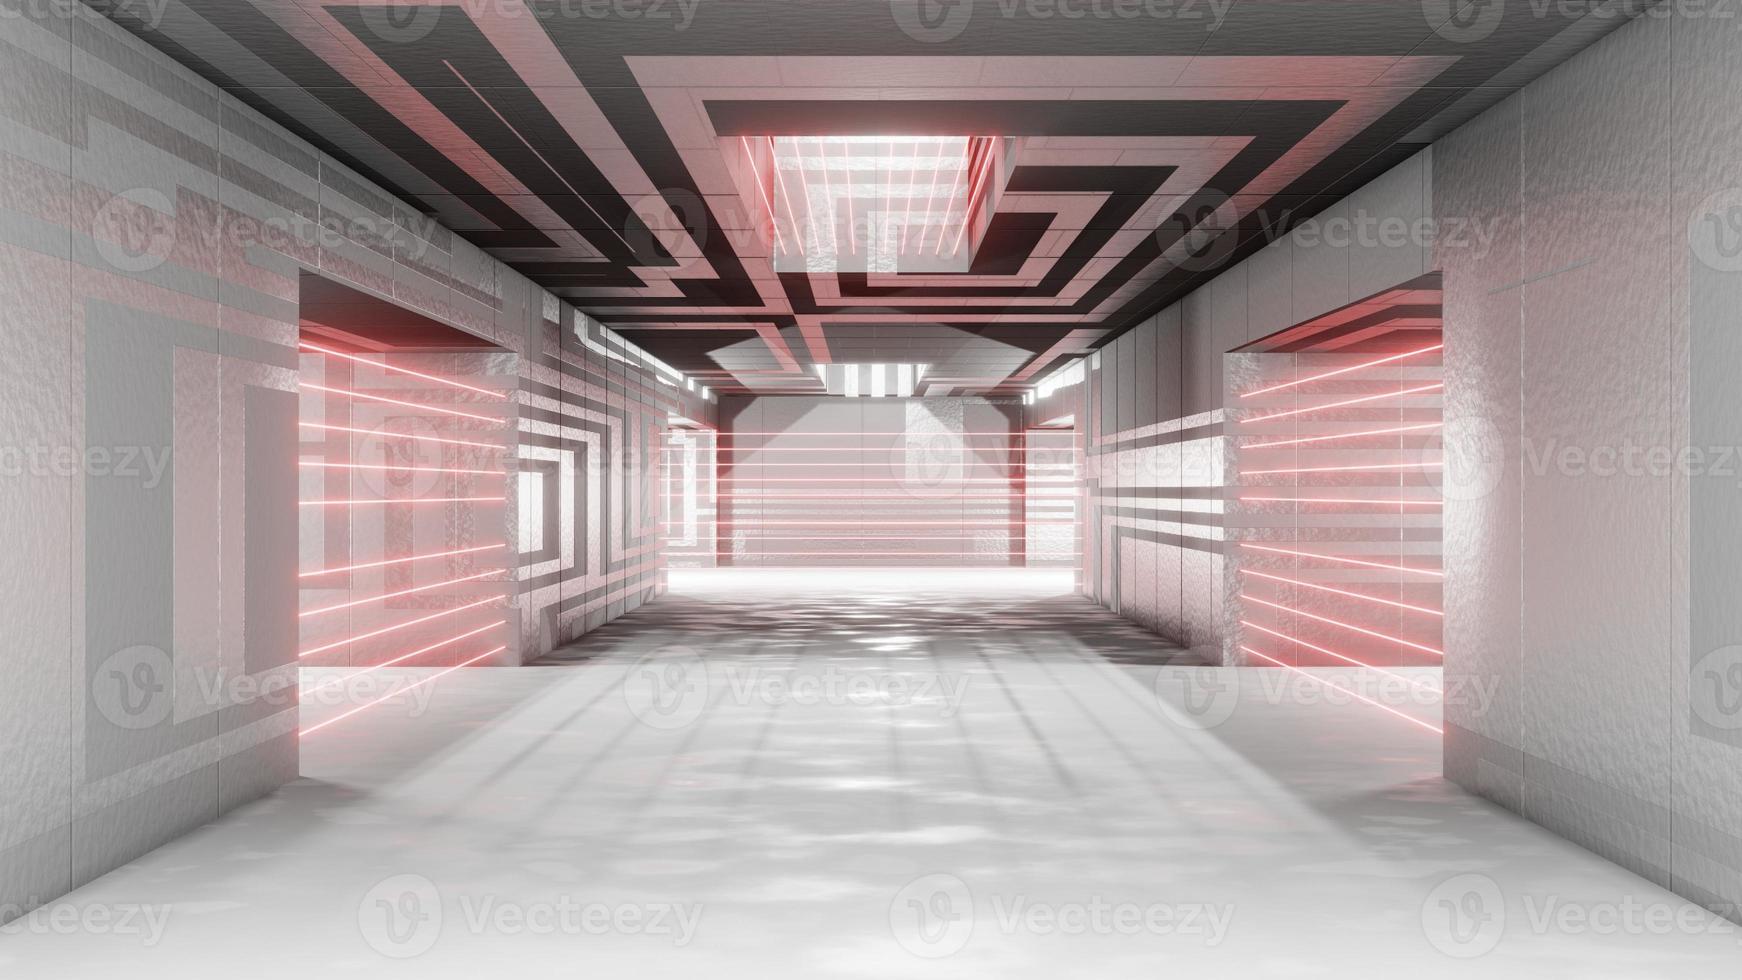 ciencia ficción interior futurista habitación láser alarma proteccion seguridad prisión corredor garaje extraterrestre espacio nave tubería comunicación brillante neón luz niebla 3d representación foto